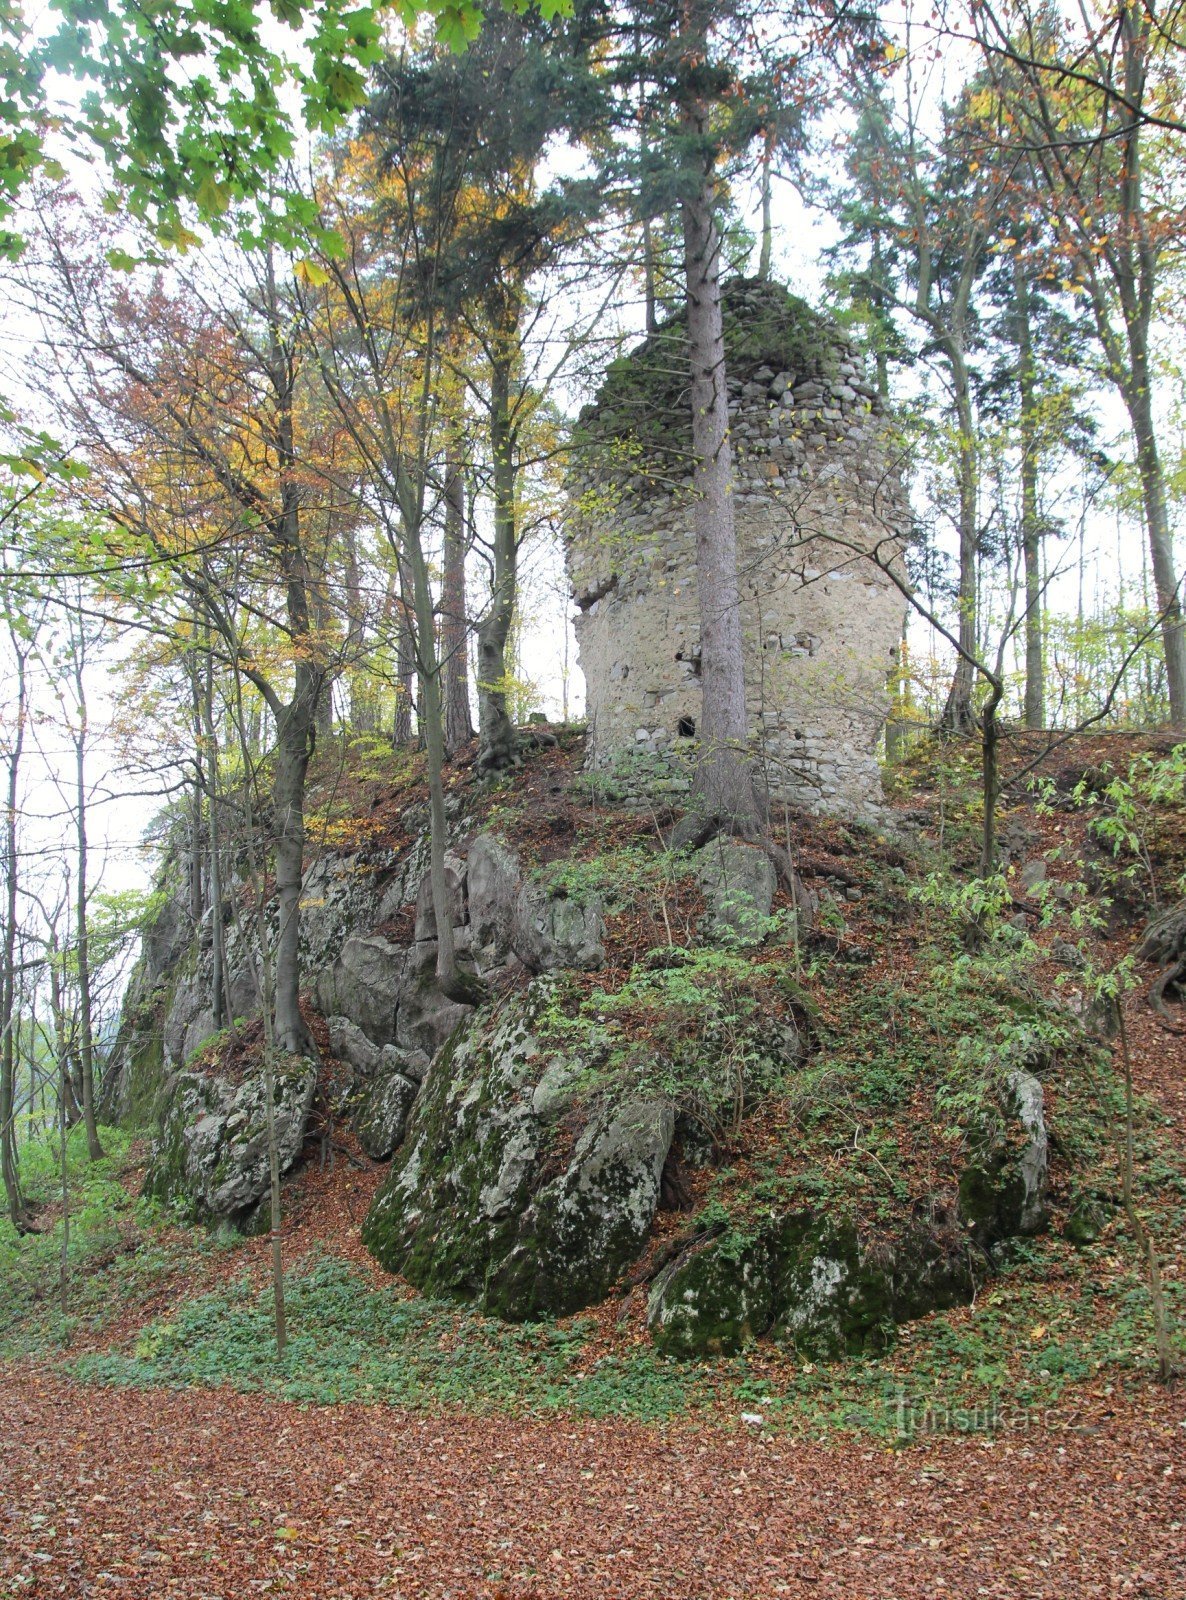 Torso da torre do castelo da encruzilhada